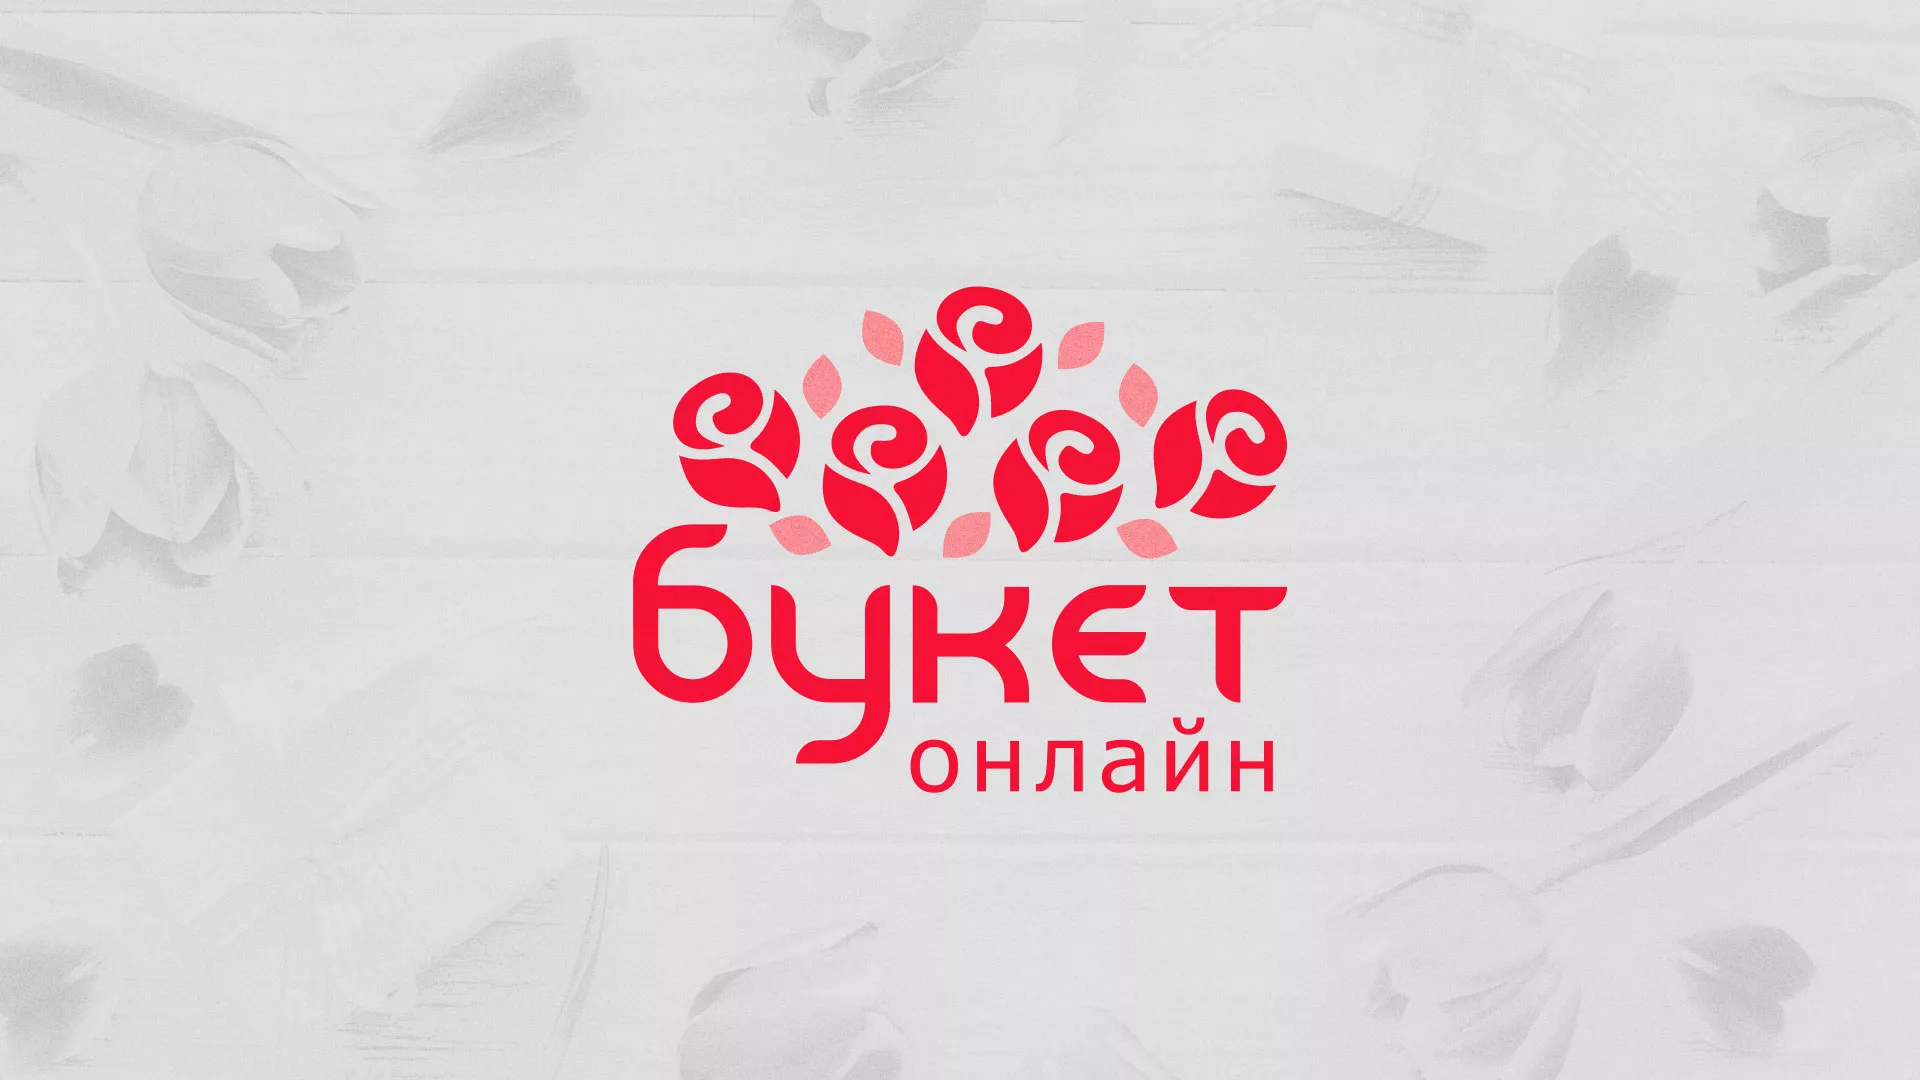 Создание интернет-магазина «Букет-онлайн» по цветам в Медвежьегорске